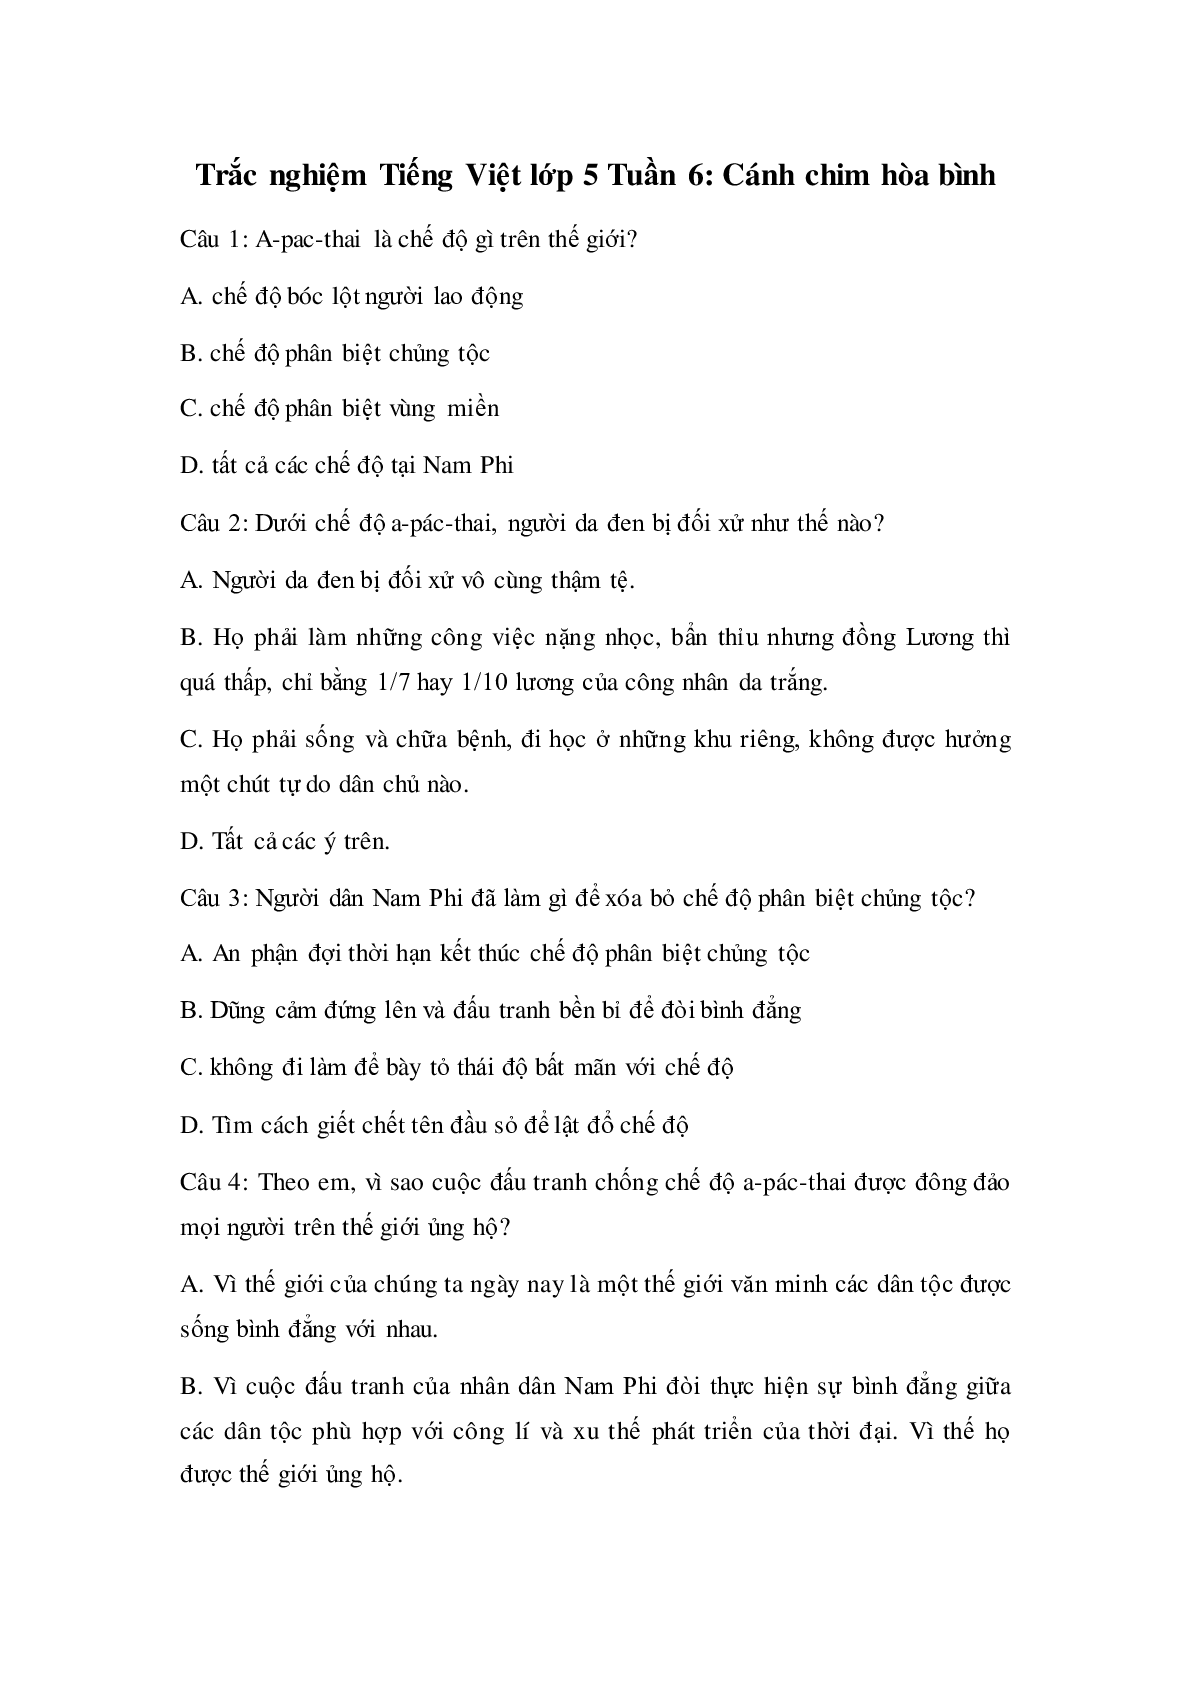 Trắc nghiệm Tiếng Việt lớp 5: Tuần 6 có đáp án (trang 1)